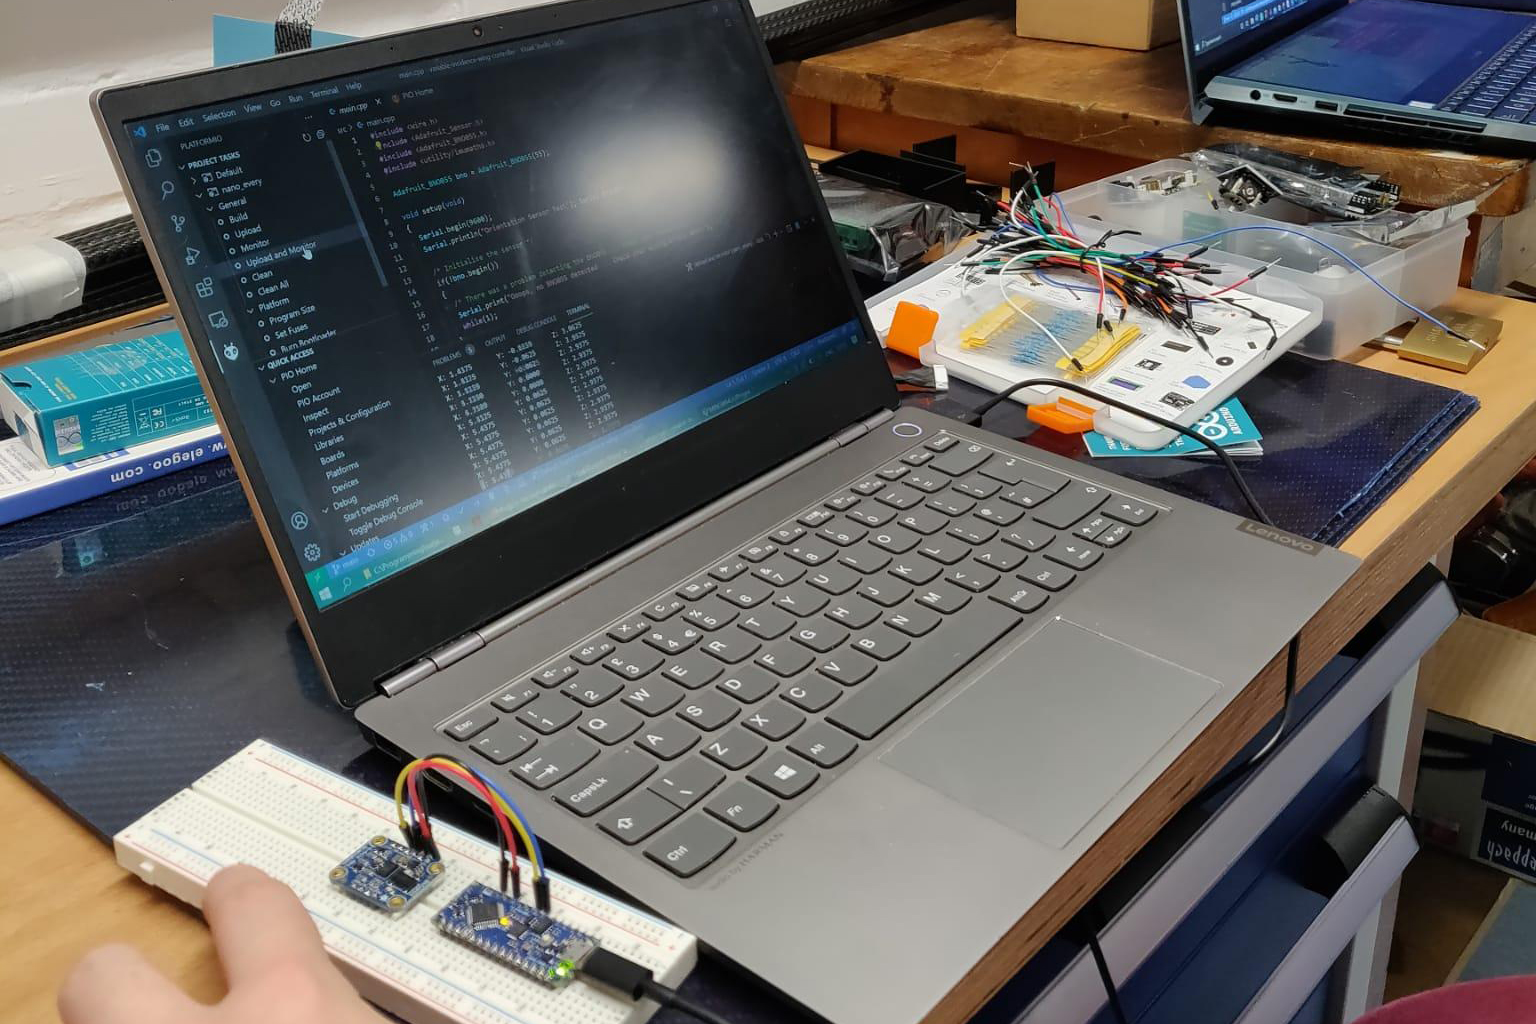 The Avionics team programming an Arduino